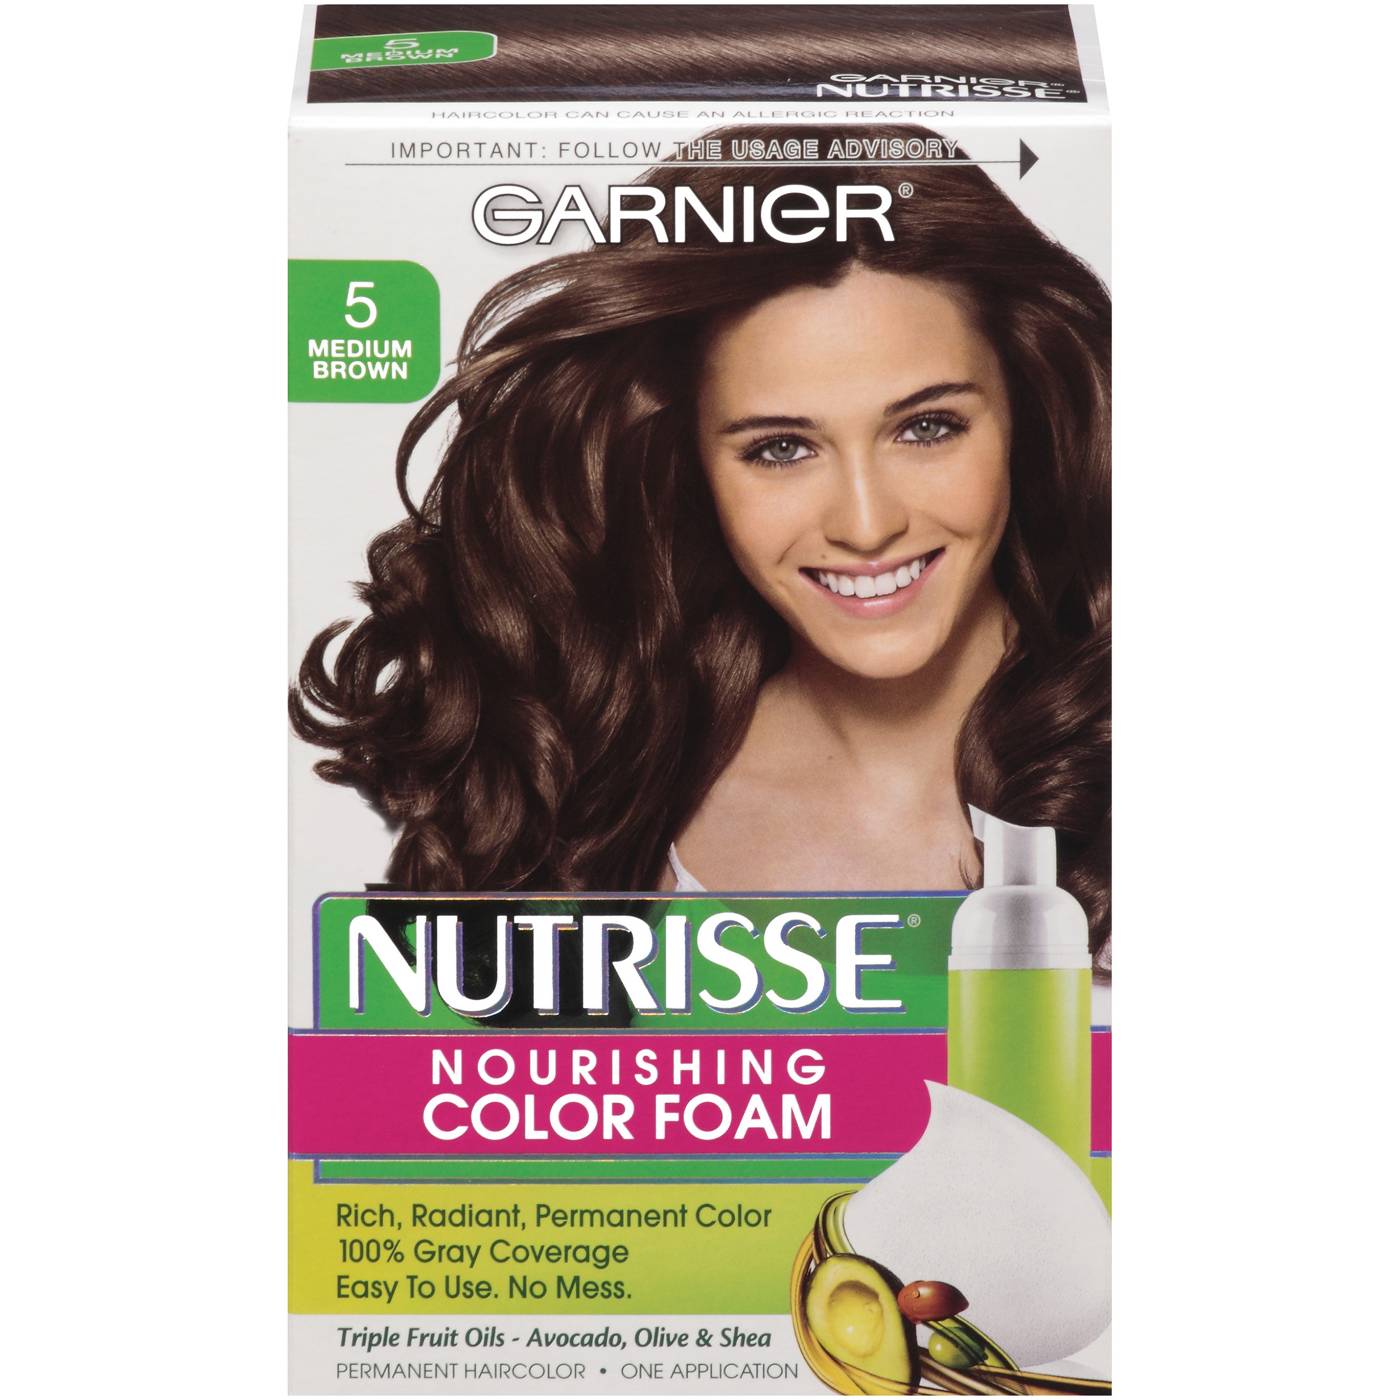 Garnier Nutrisse Nourishing Hair Color Foam 5 Medium Brown; image 1 of 2